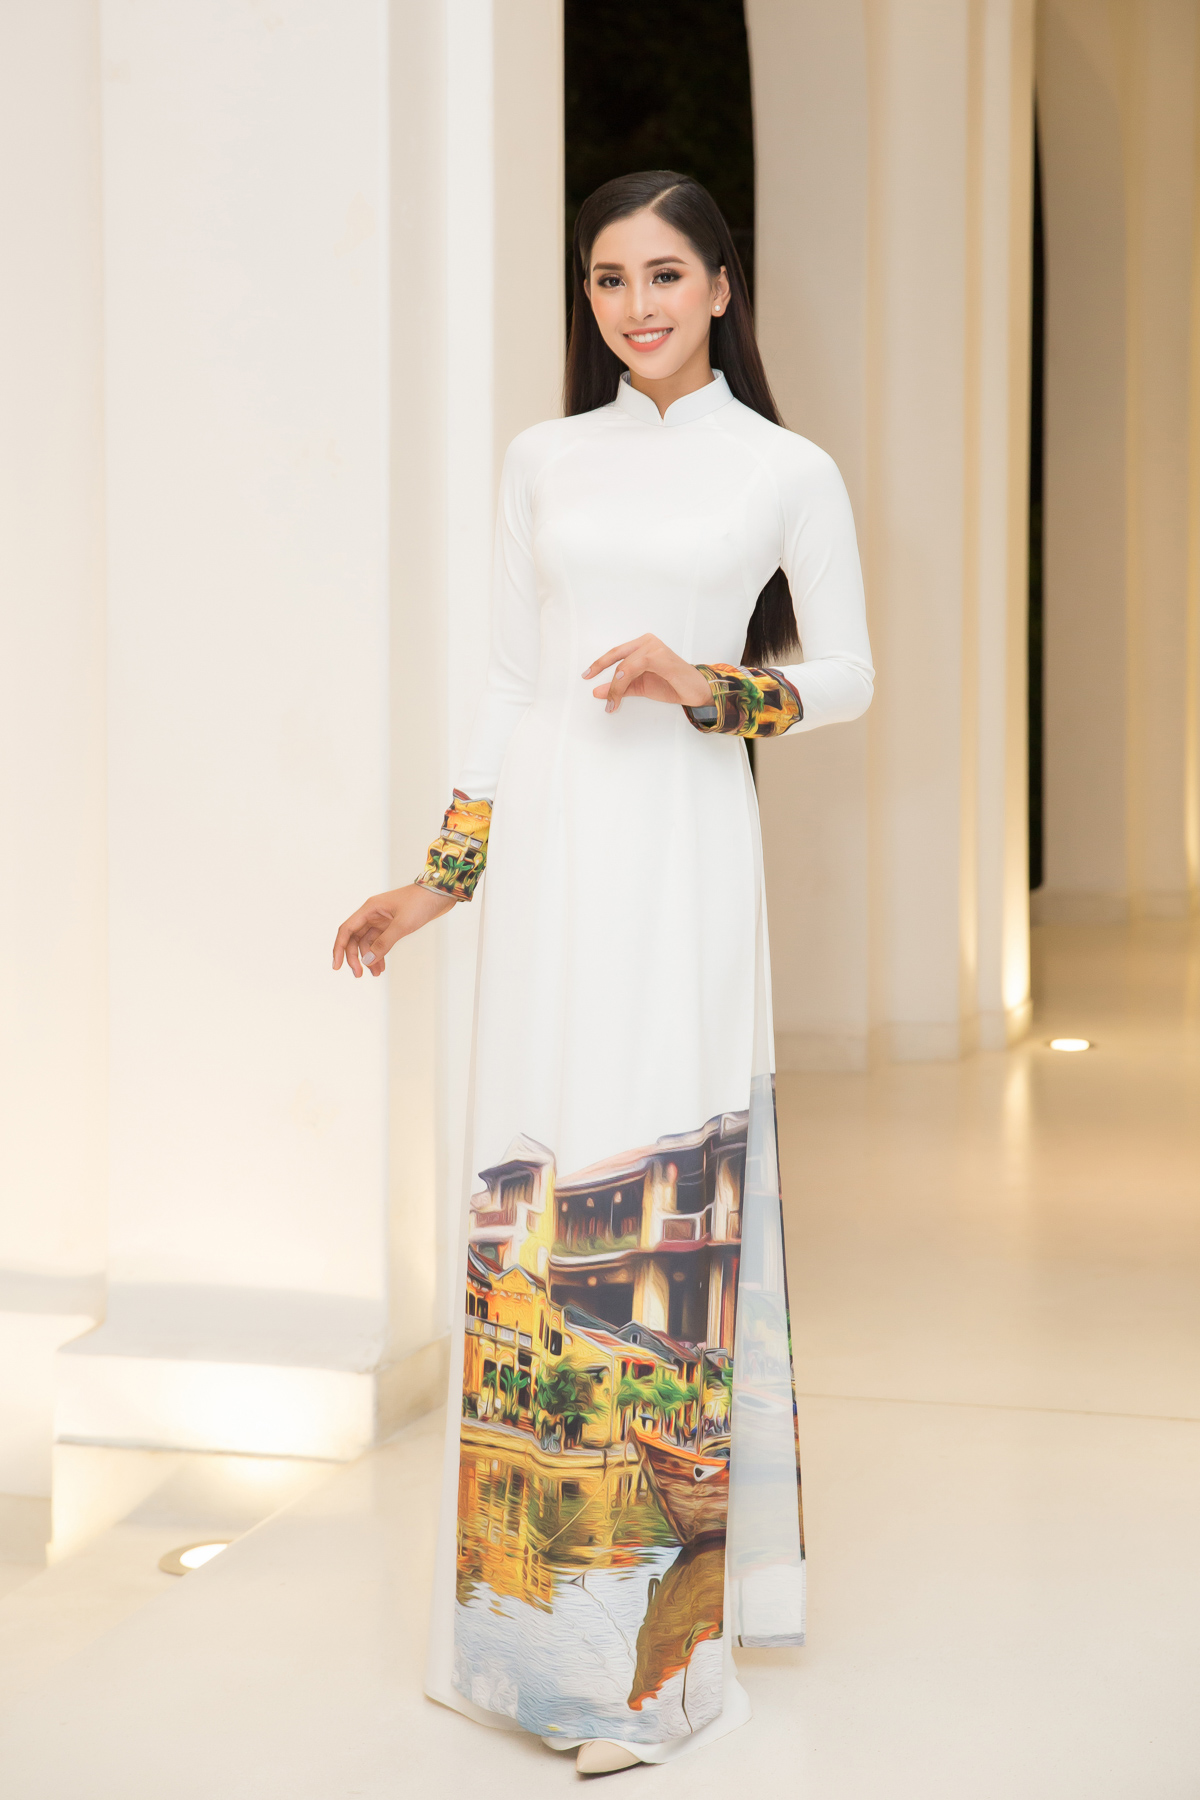 Hoa hậu tiểu vy và đỗ mỹ linh đọ sắc trong tà áo dài duyên dáng